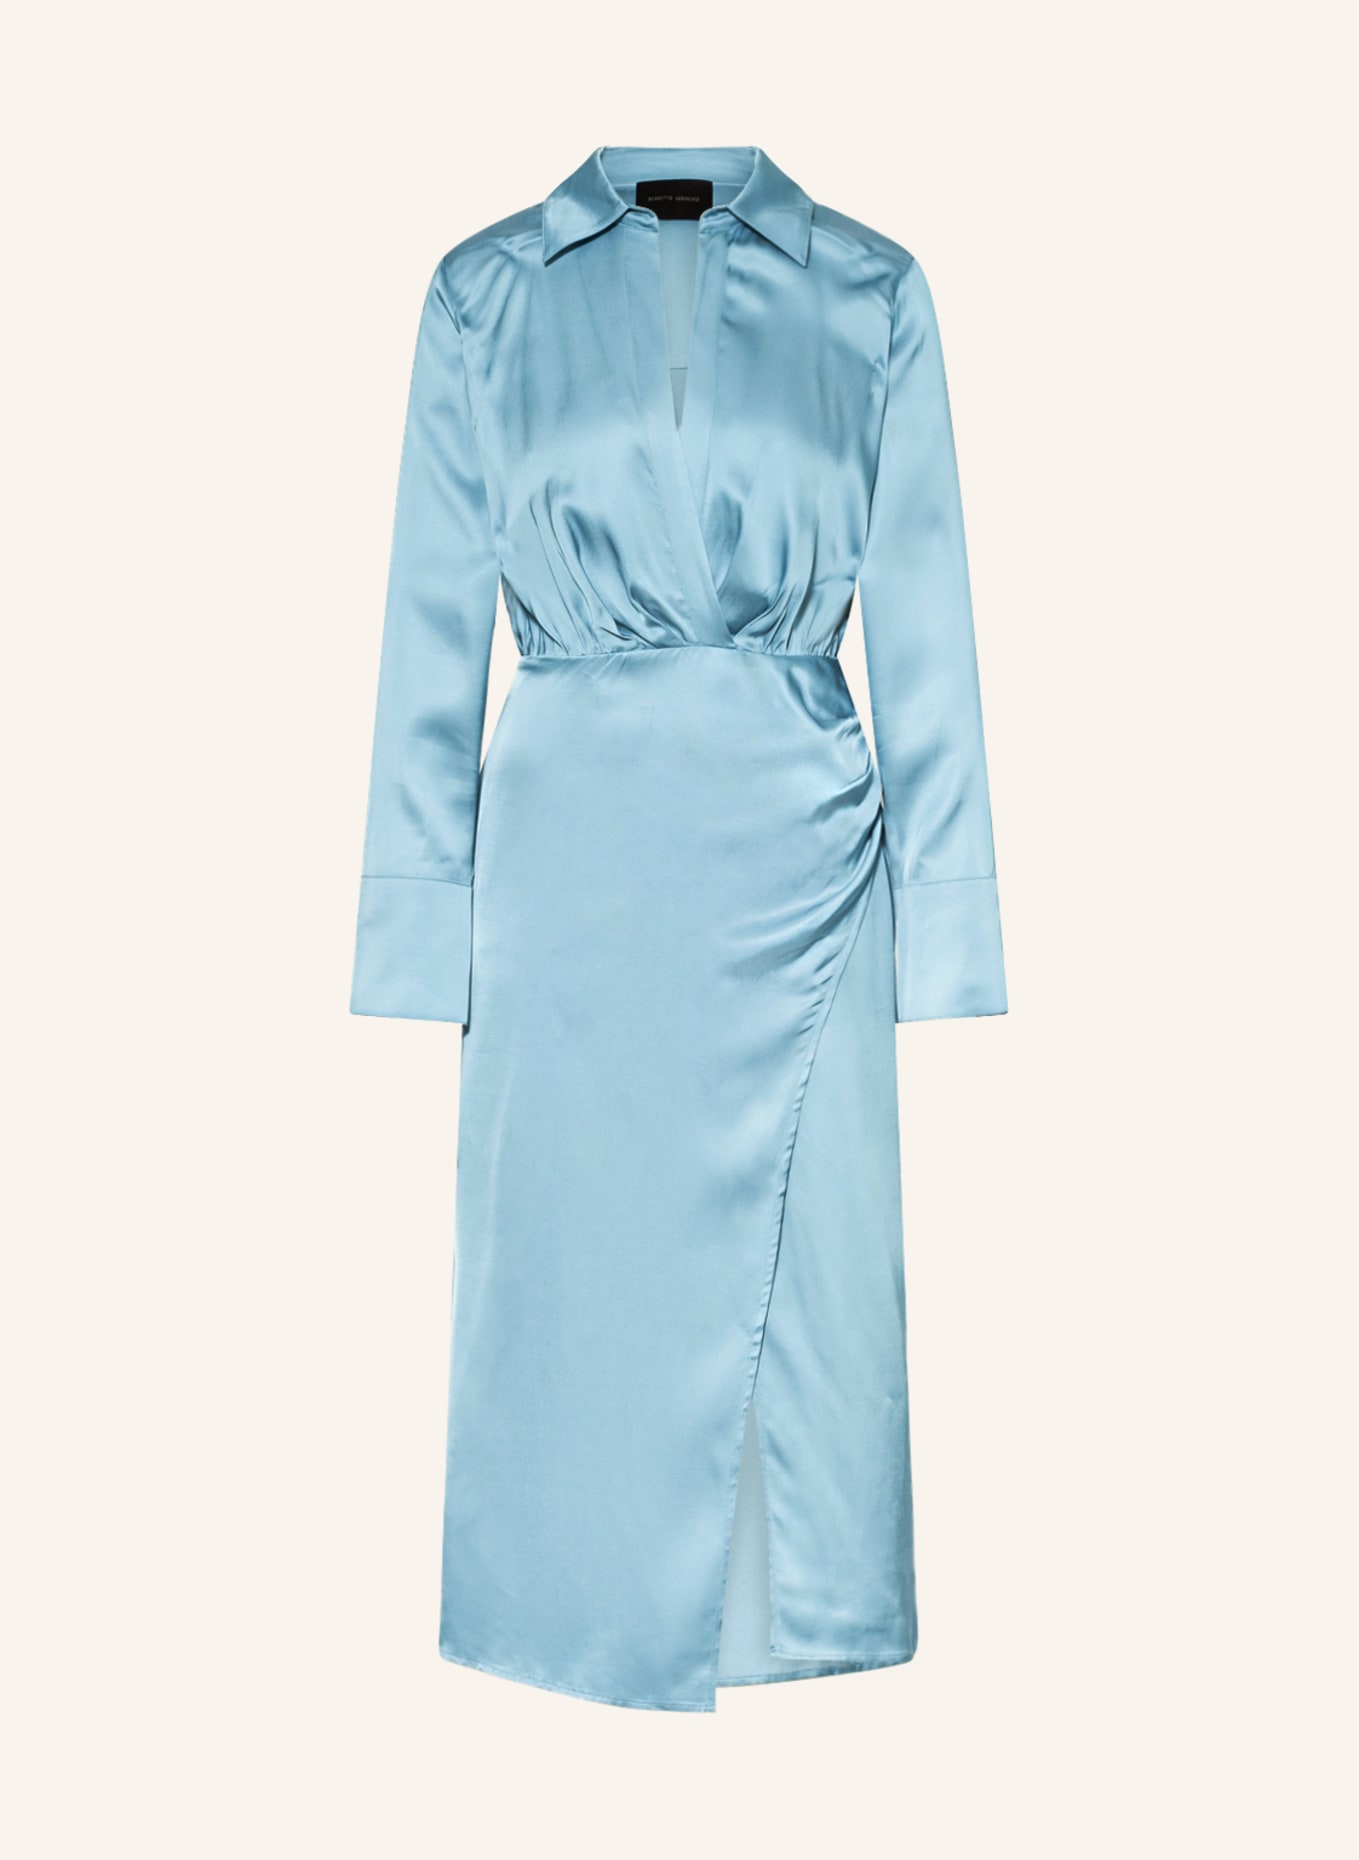 BIRGITTE HERSKIND Kleid SAREEN, Farbe: 044 dustblue (Bild 1)